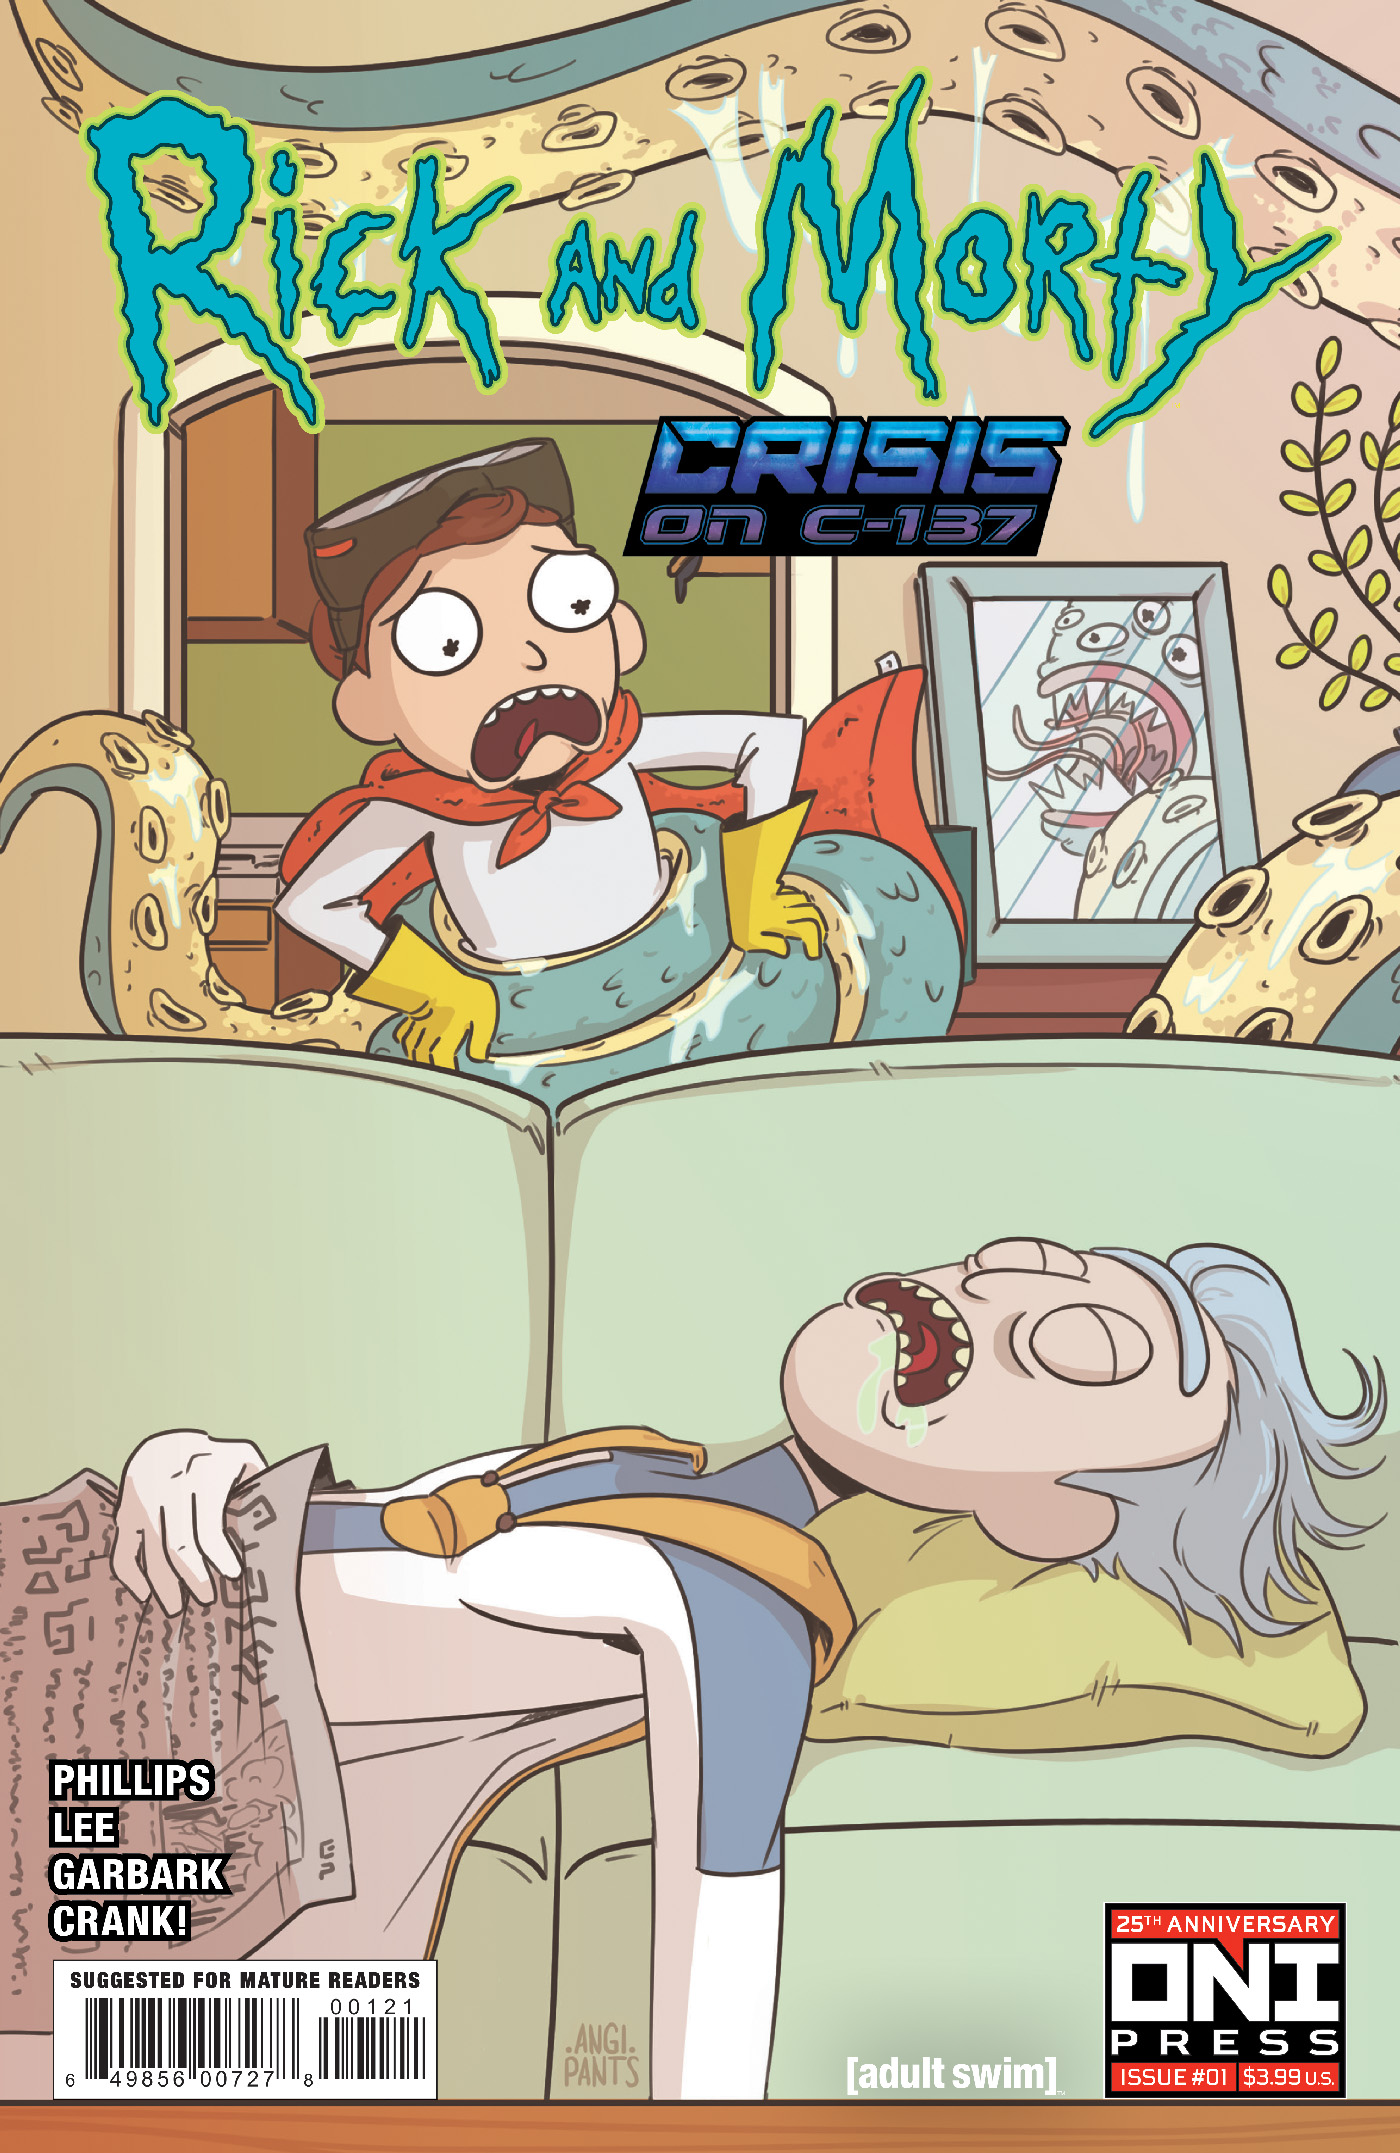 Portada variante de Rick y Morty: Crisis en C-137 n.º 1